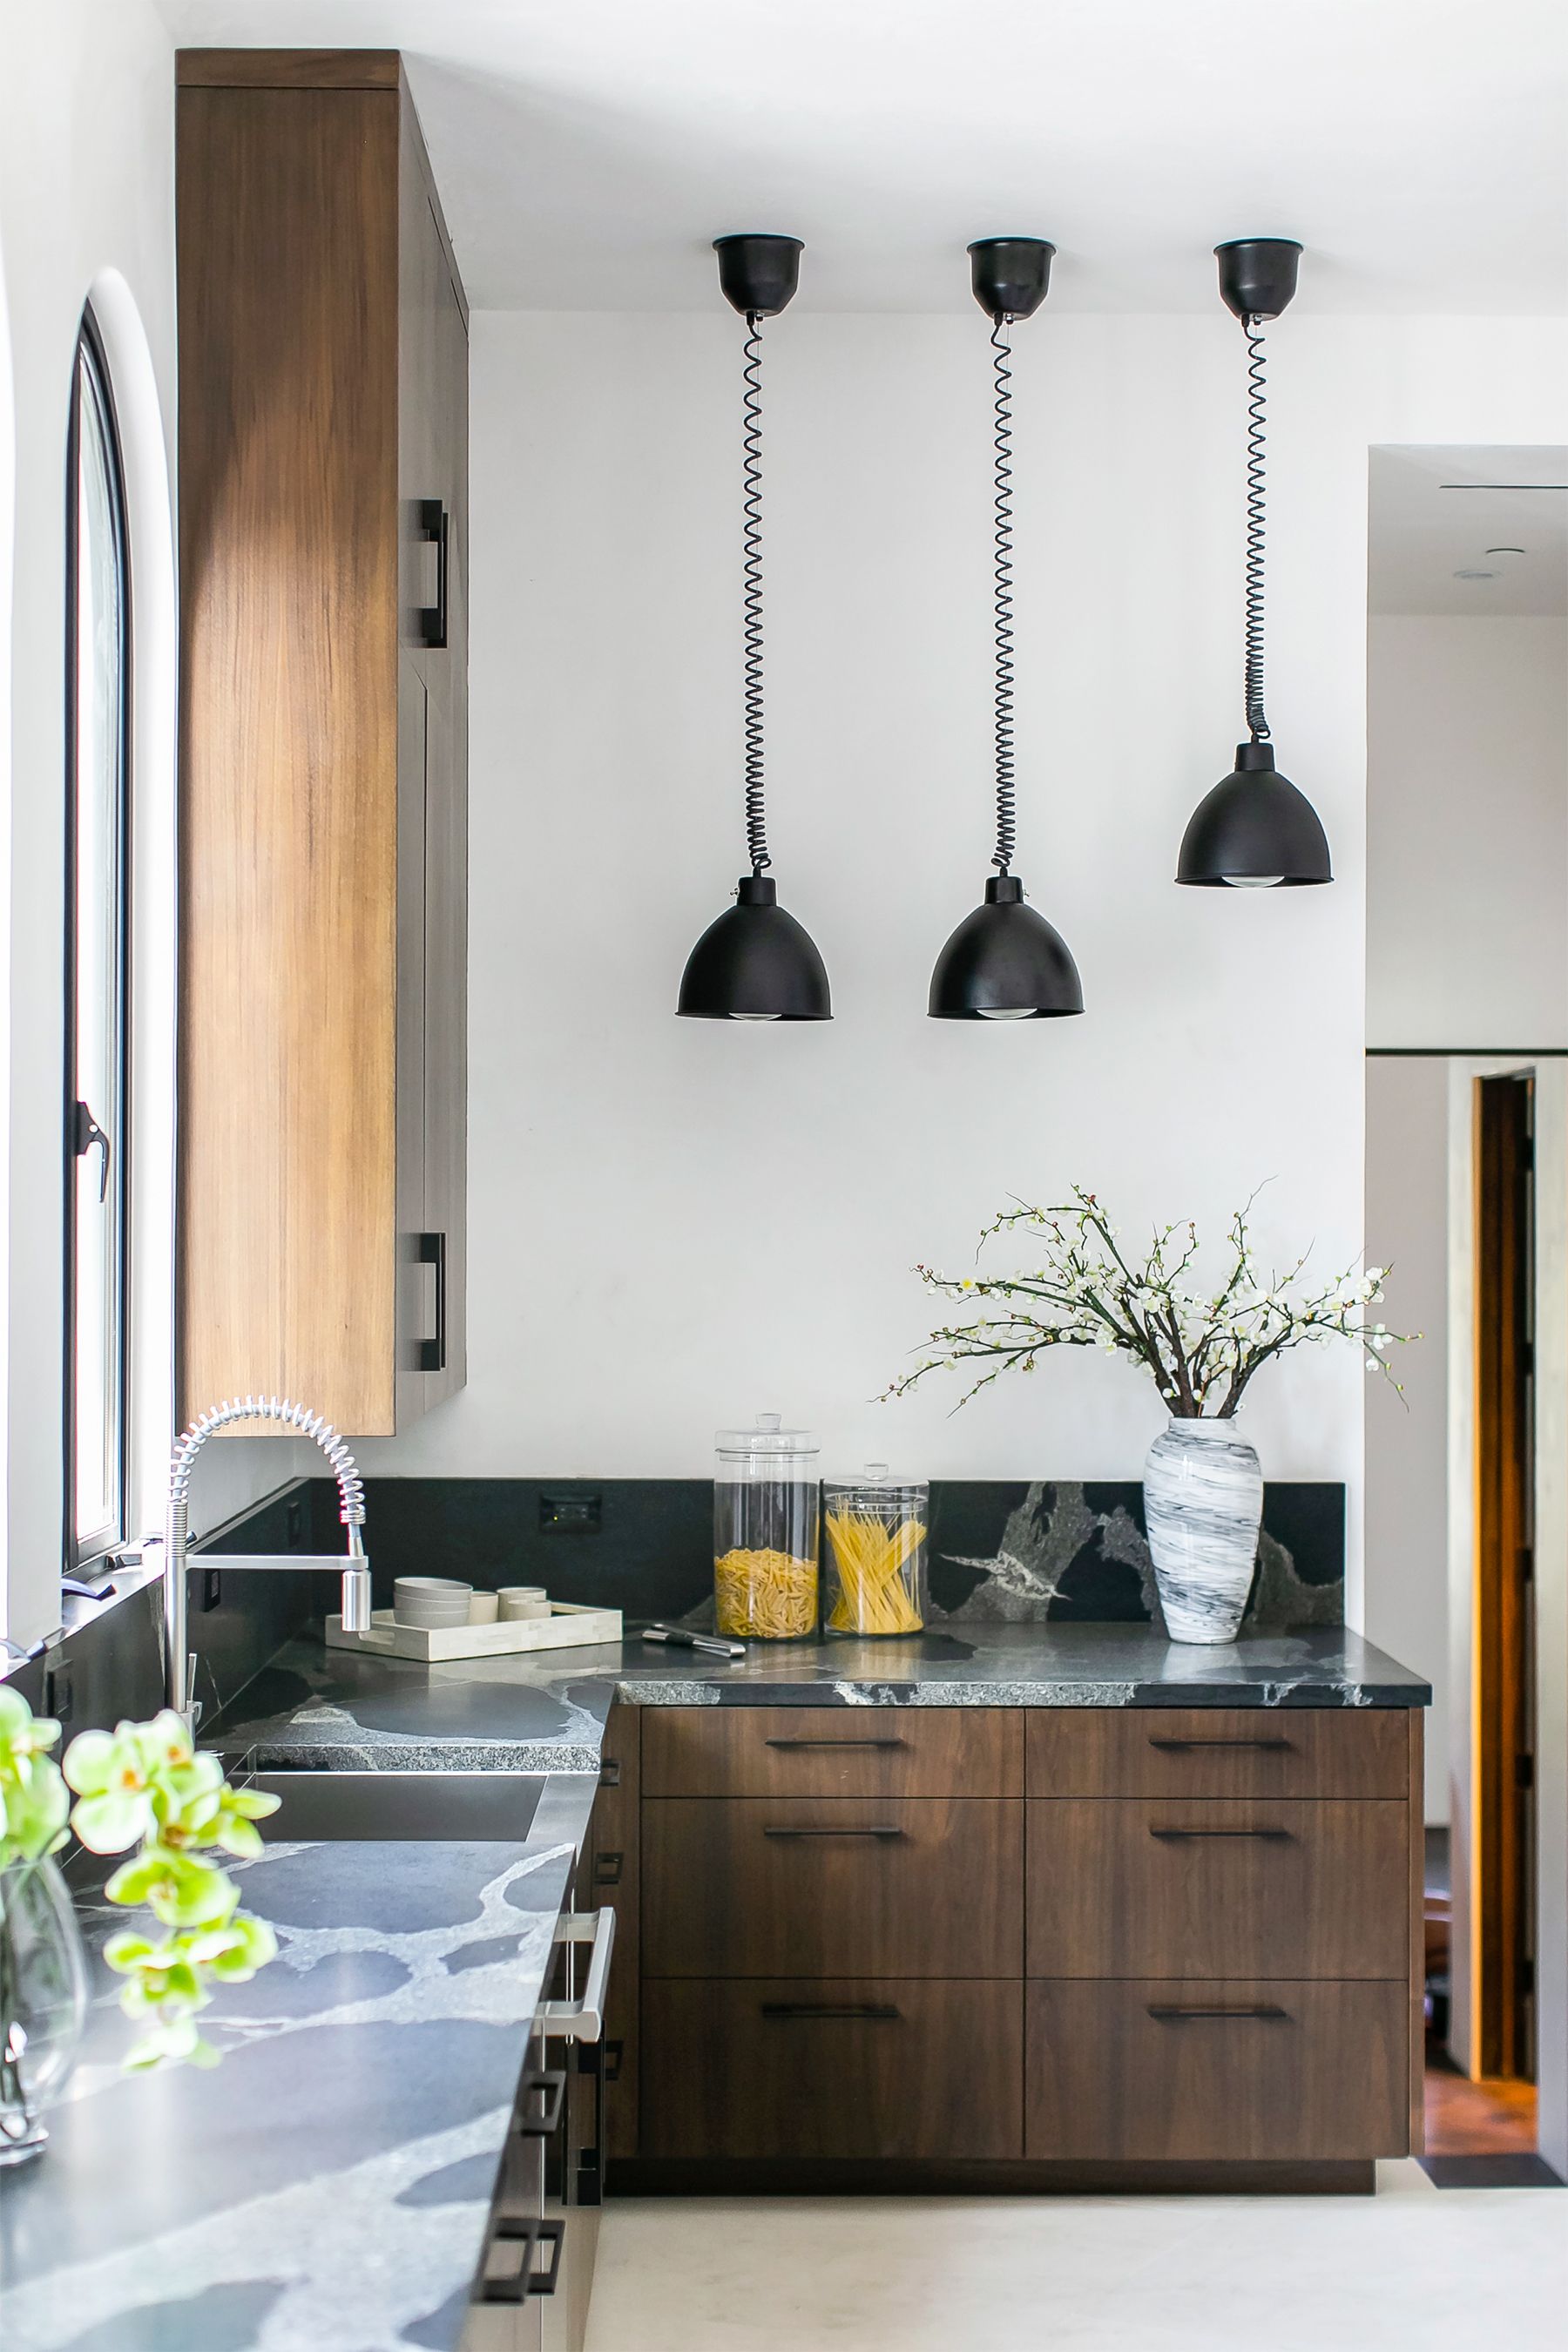 60 Kitchen Cabinet Design Ideas 2021 Unique Kitchen Cabinet Styles